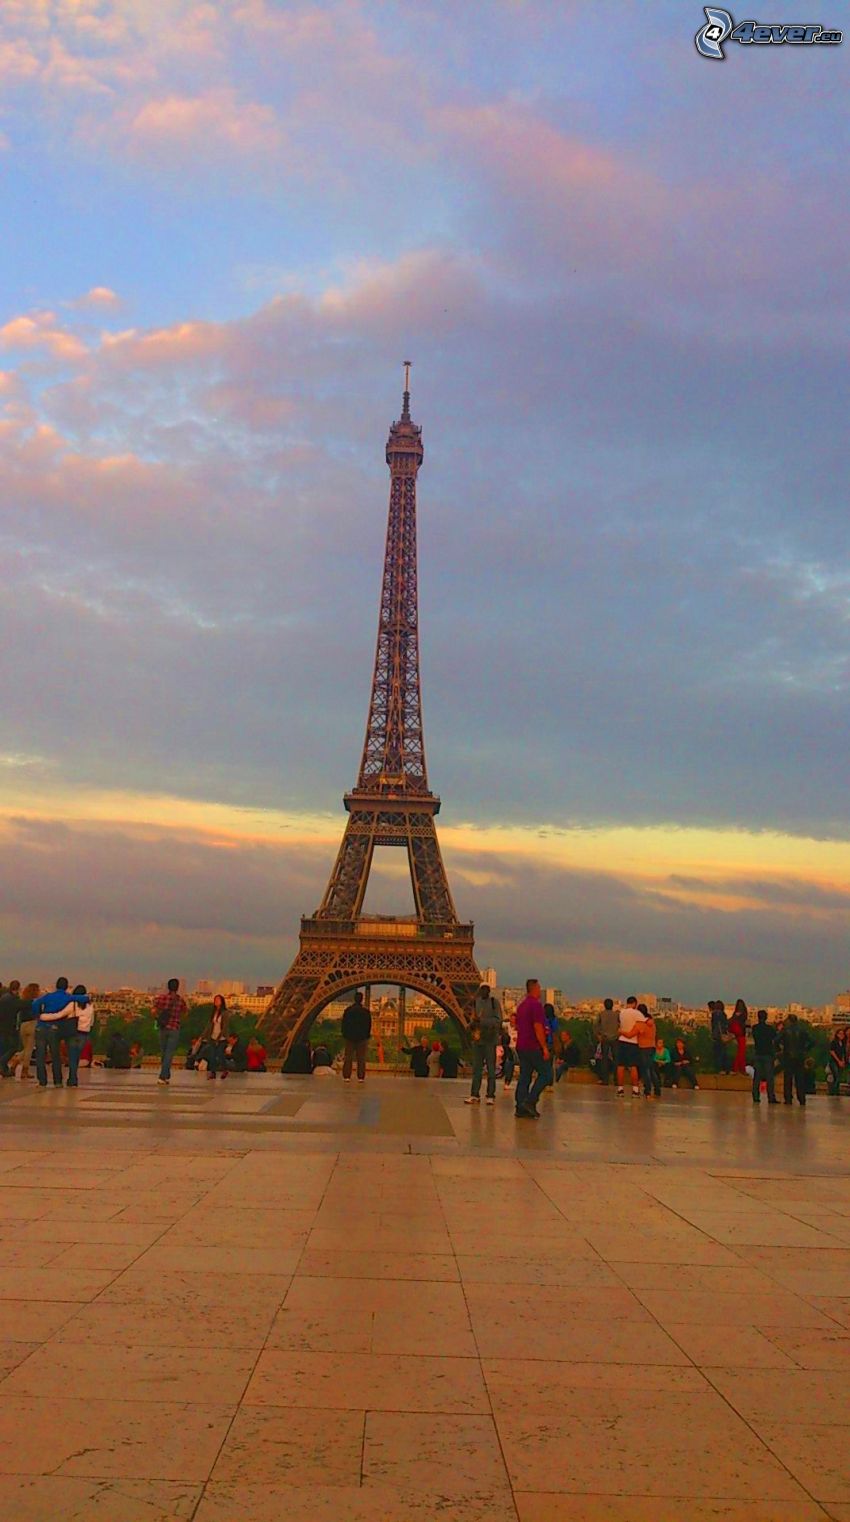 Eiffel Tower, Paris, France, people, pavement